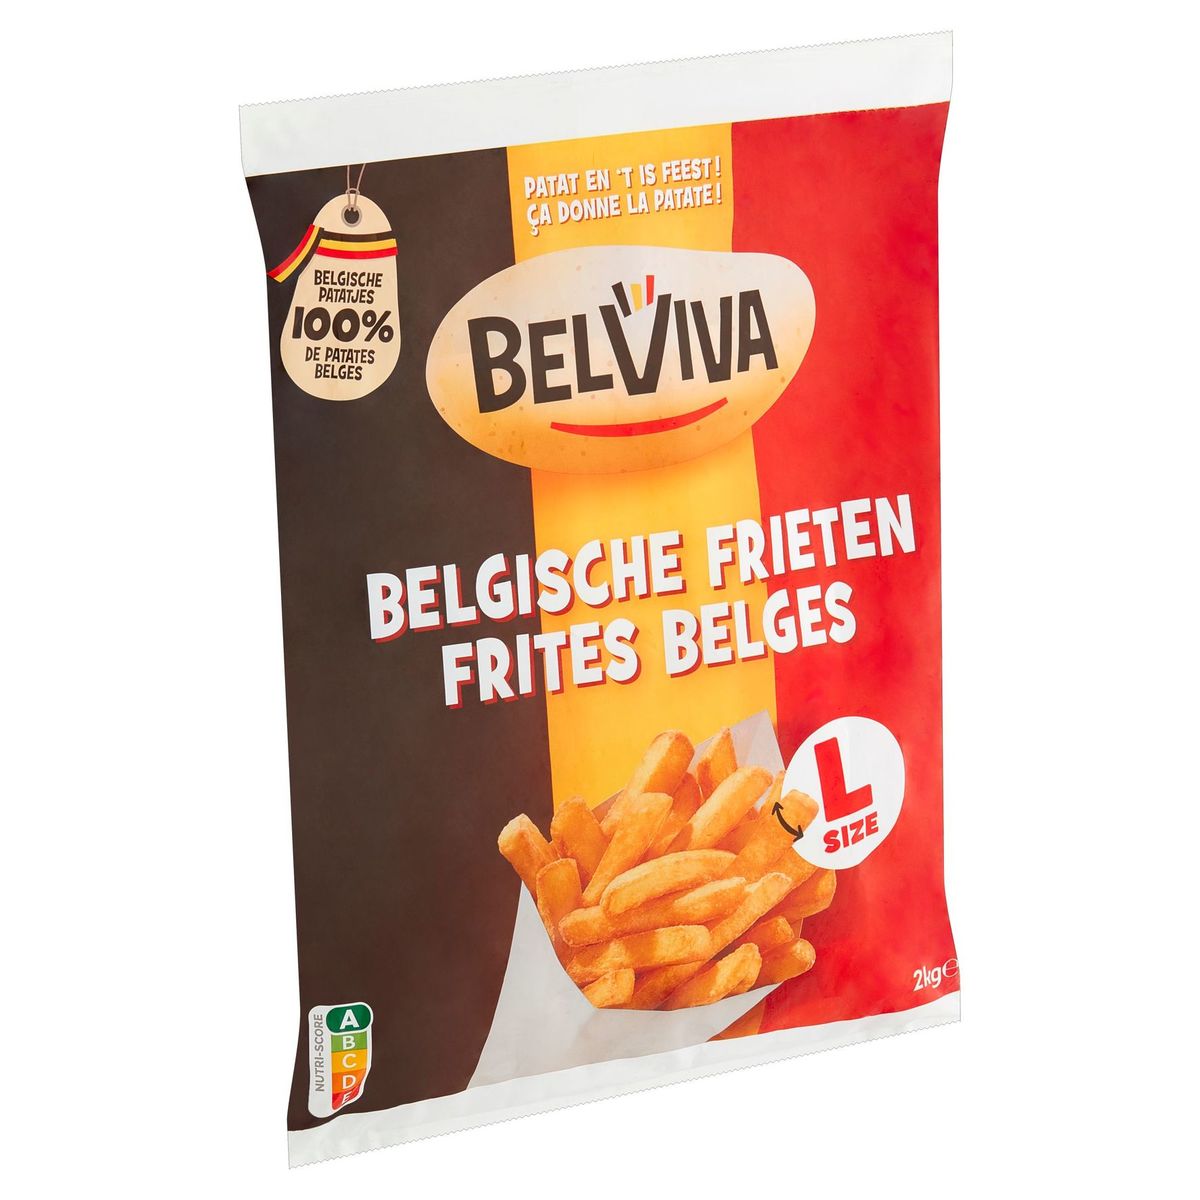 Belviva Belgische Frieten 2 kg